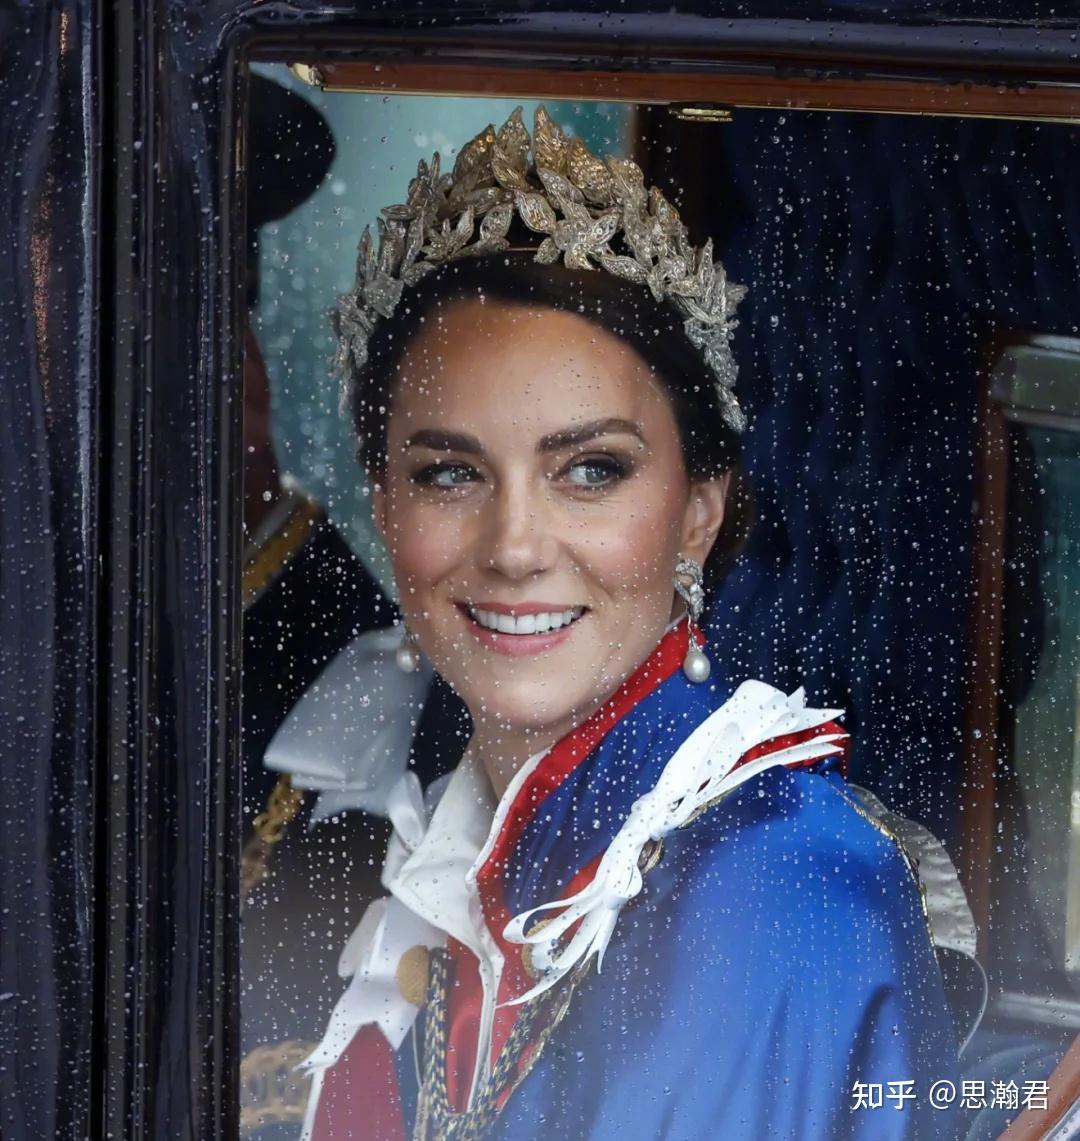 查尔斯加冕礼前夕 凯特王妃现身街头与民众互动-搜狐大视野-搜狐新闻